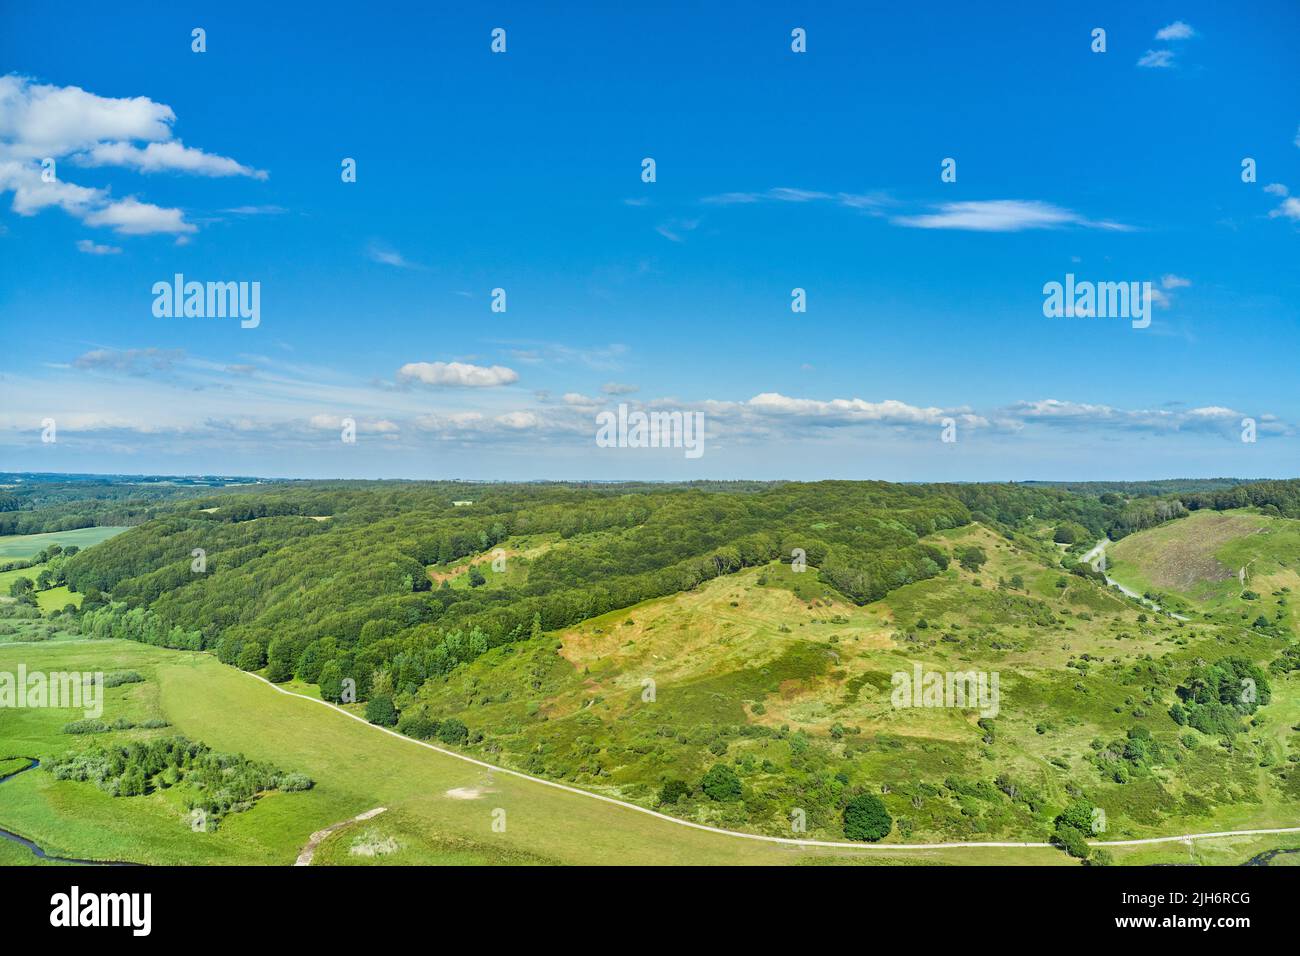 Eine landwirtschaftliche Landschaft mit grünen Weiden und Hügeln im Sommer. Luftaufnahme einer Farm mit üppigem Gras vor einem wolkenblauen Himmel mit Copyspace Stockfoto